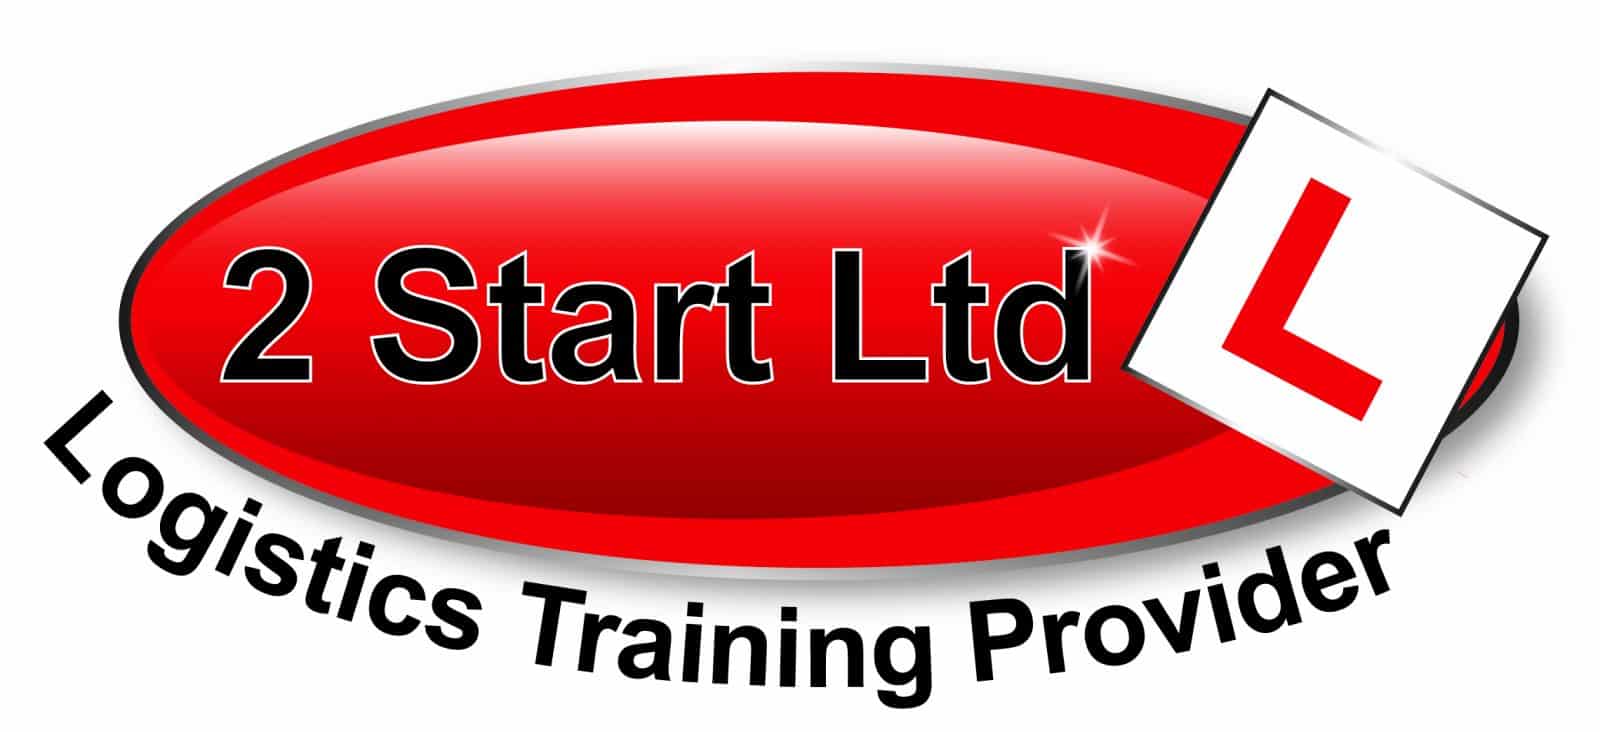 2 Start Ltd. Logo